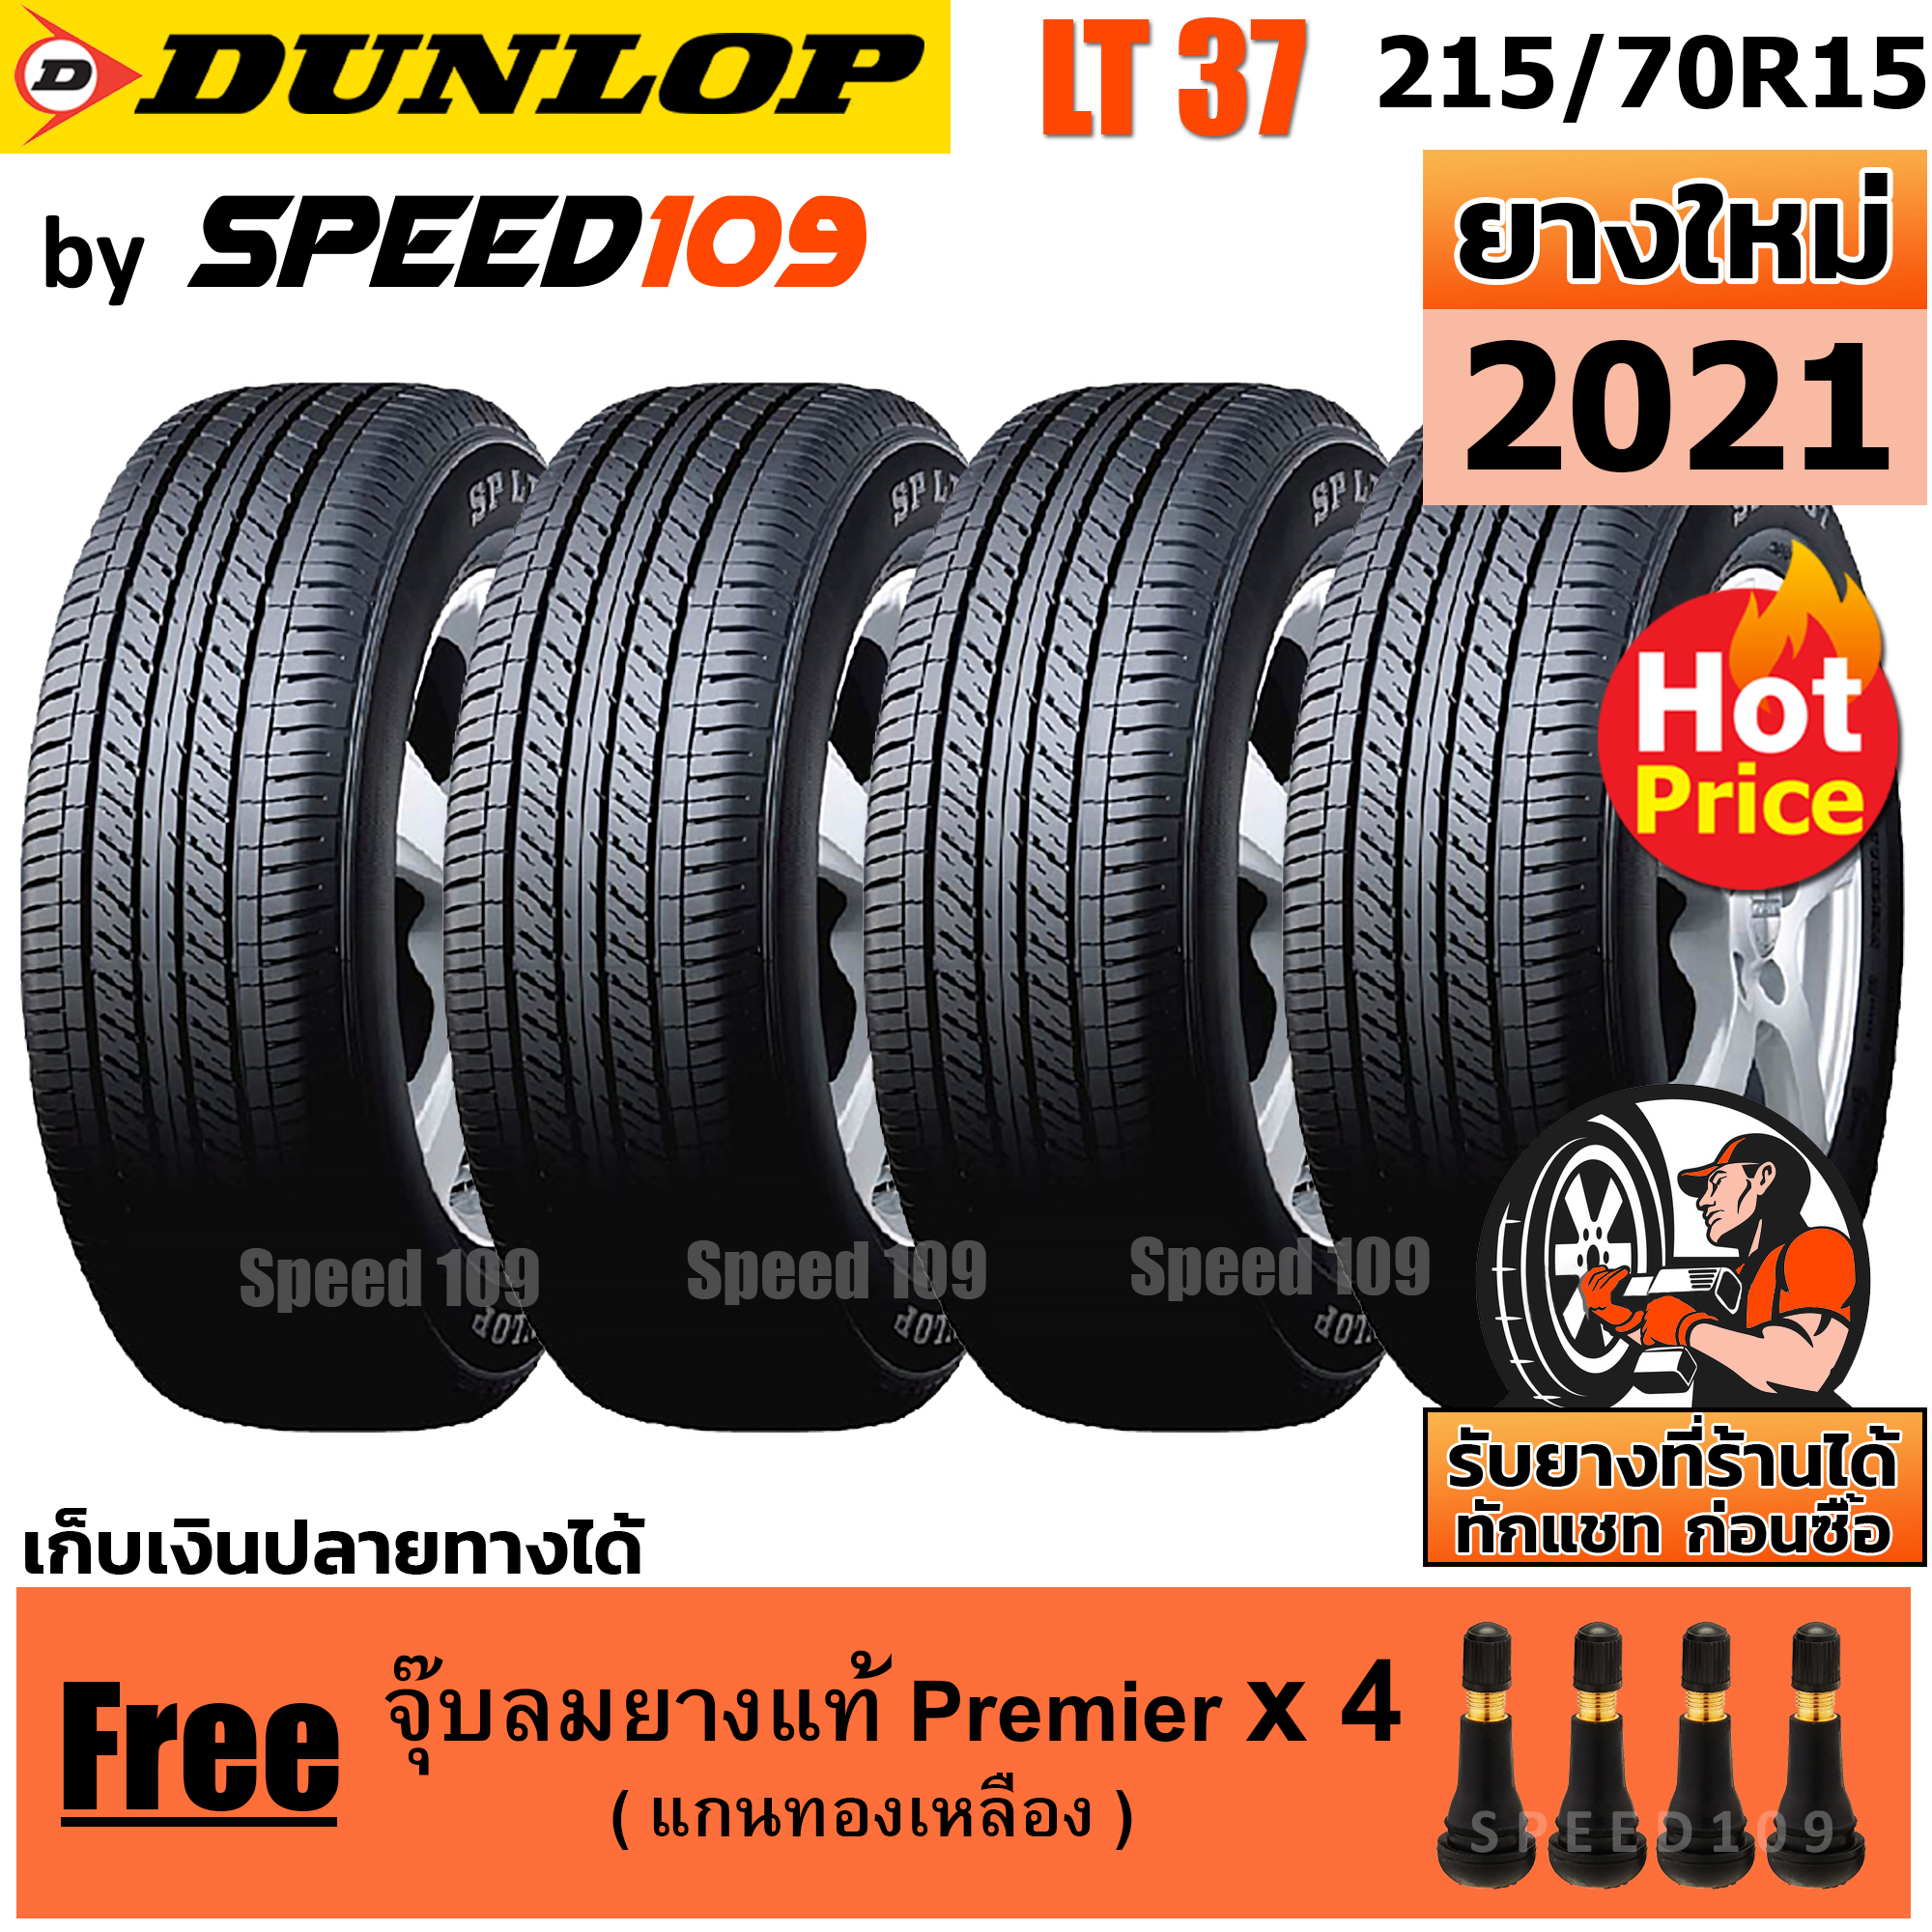 DUNLOP ยางรถยนต์ ขอบ 15 ขนาด 215/70R15 รุ่น SP LT37 - 4 เส้น (ปี 2021)